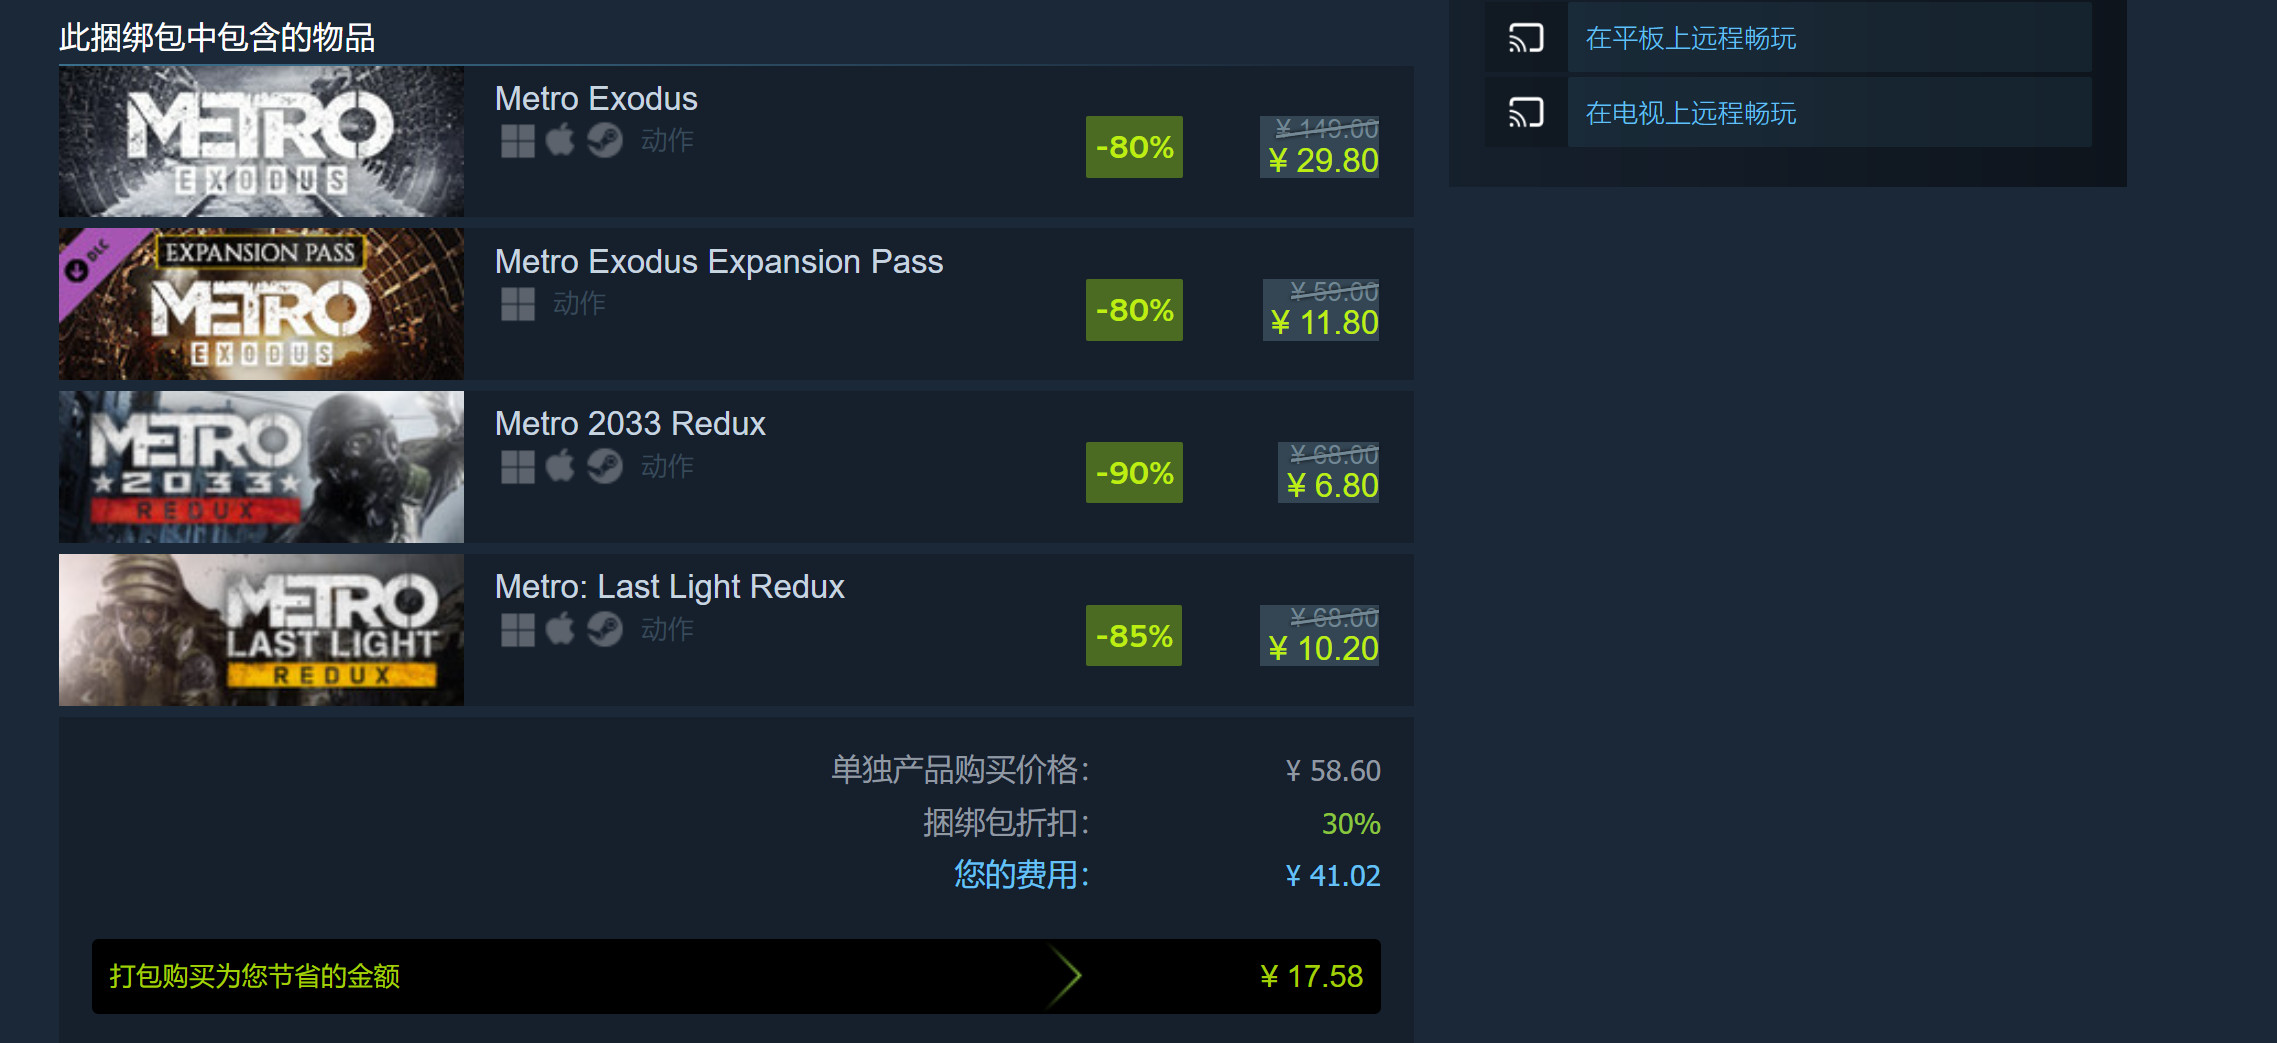 《地铁》系列Steam新史低促销 三款游戏仅41元